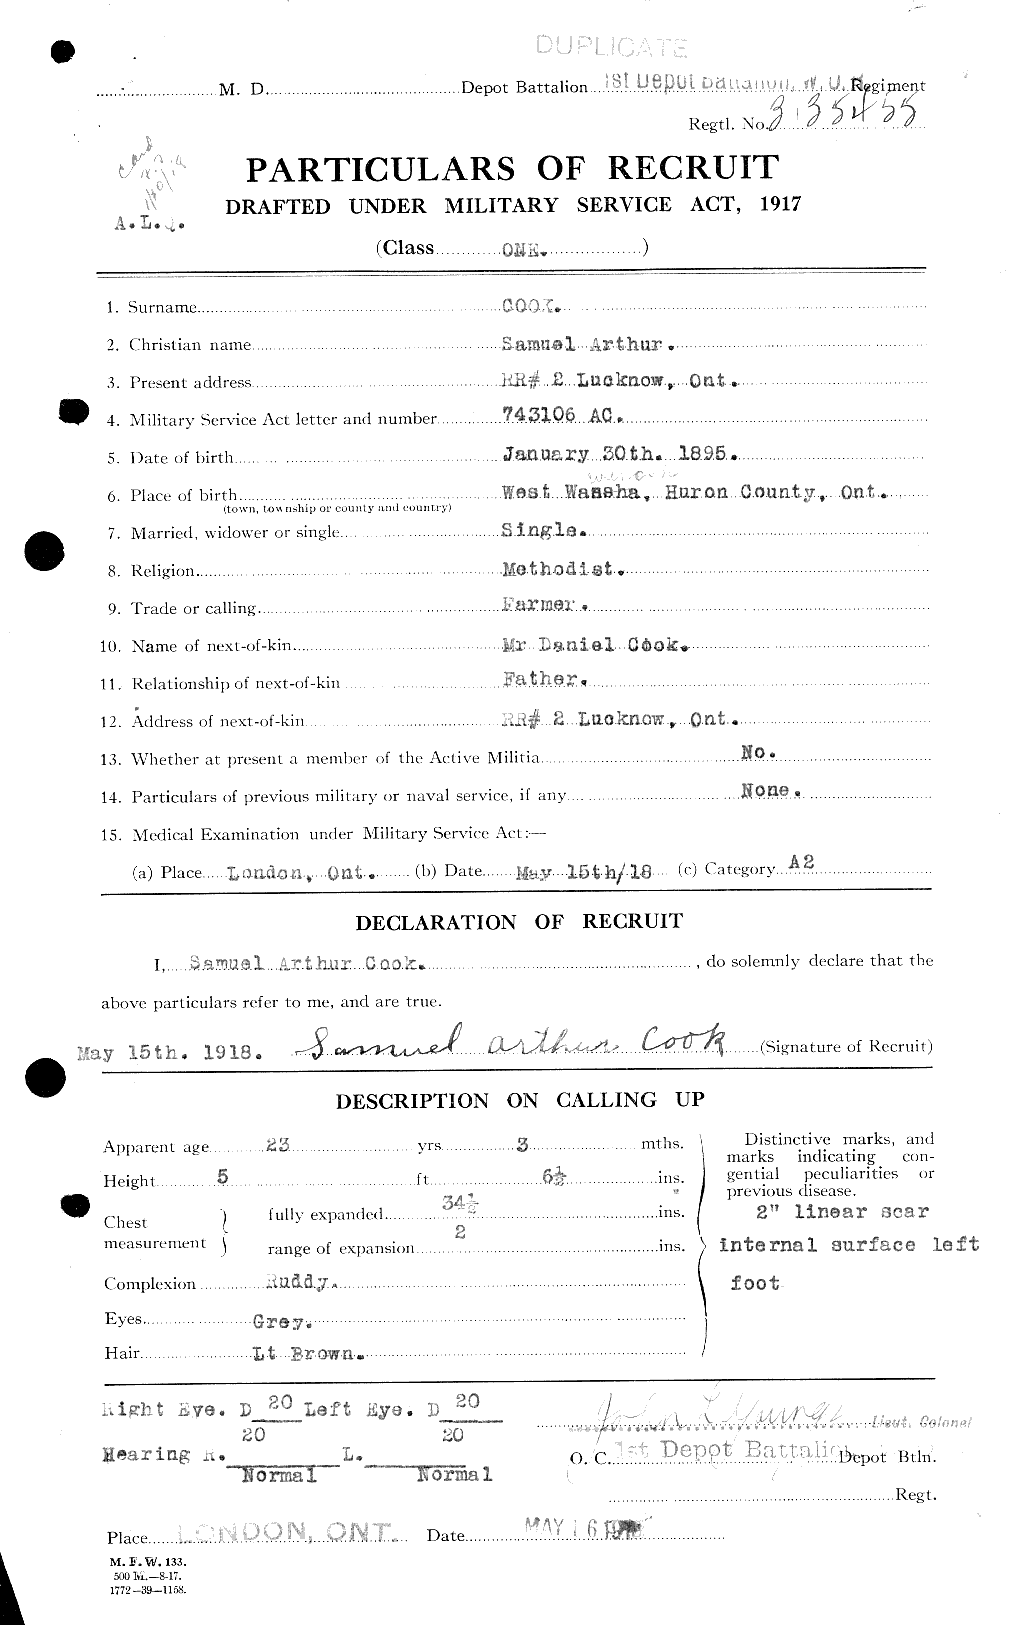 Dossiers du Personnel de la Première Guerre mondiale - CEC 048971a